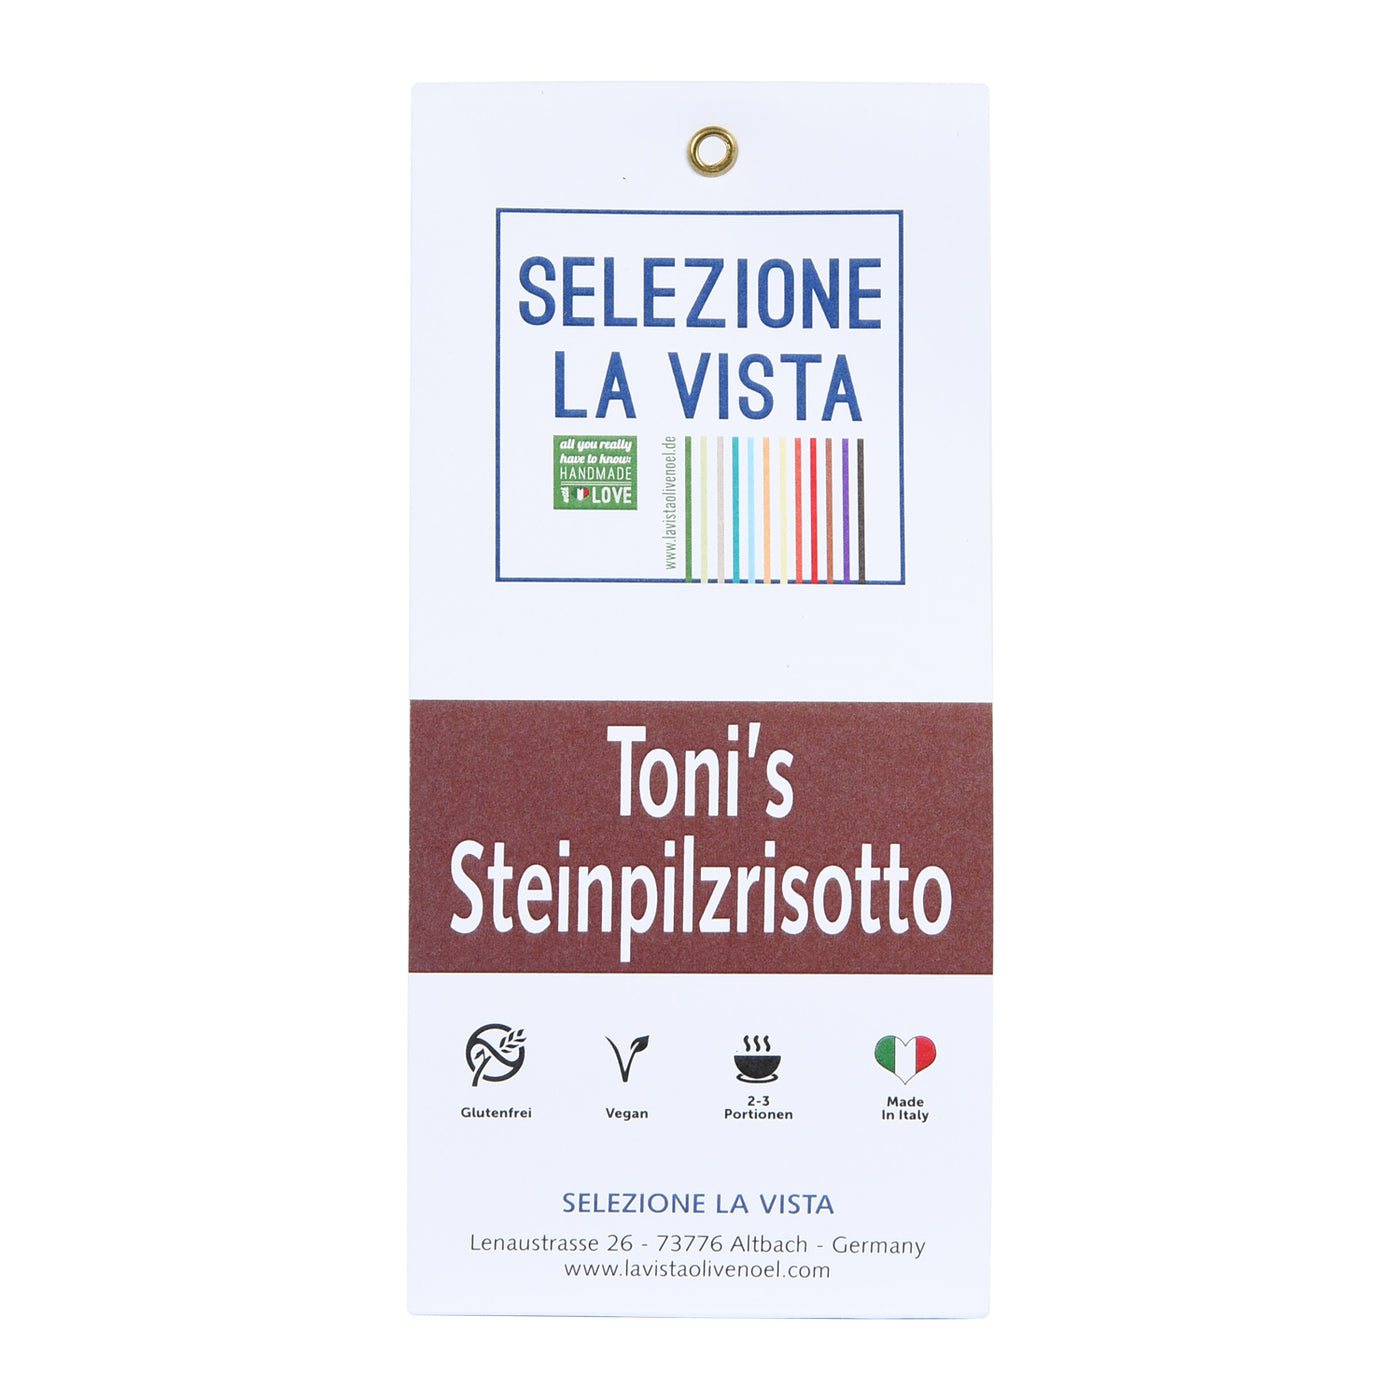 Selezione La Vista Toni's Steinpilzrisotto